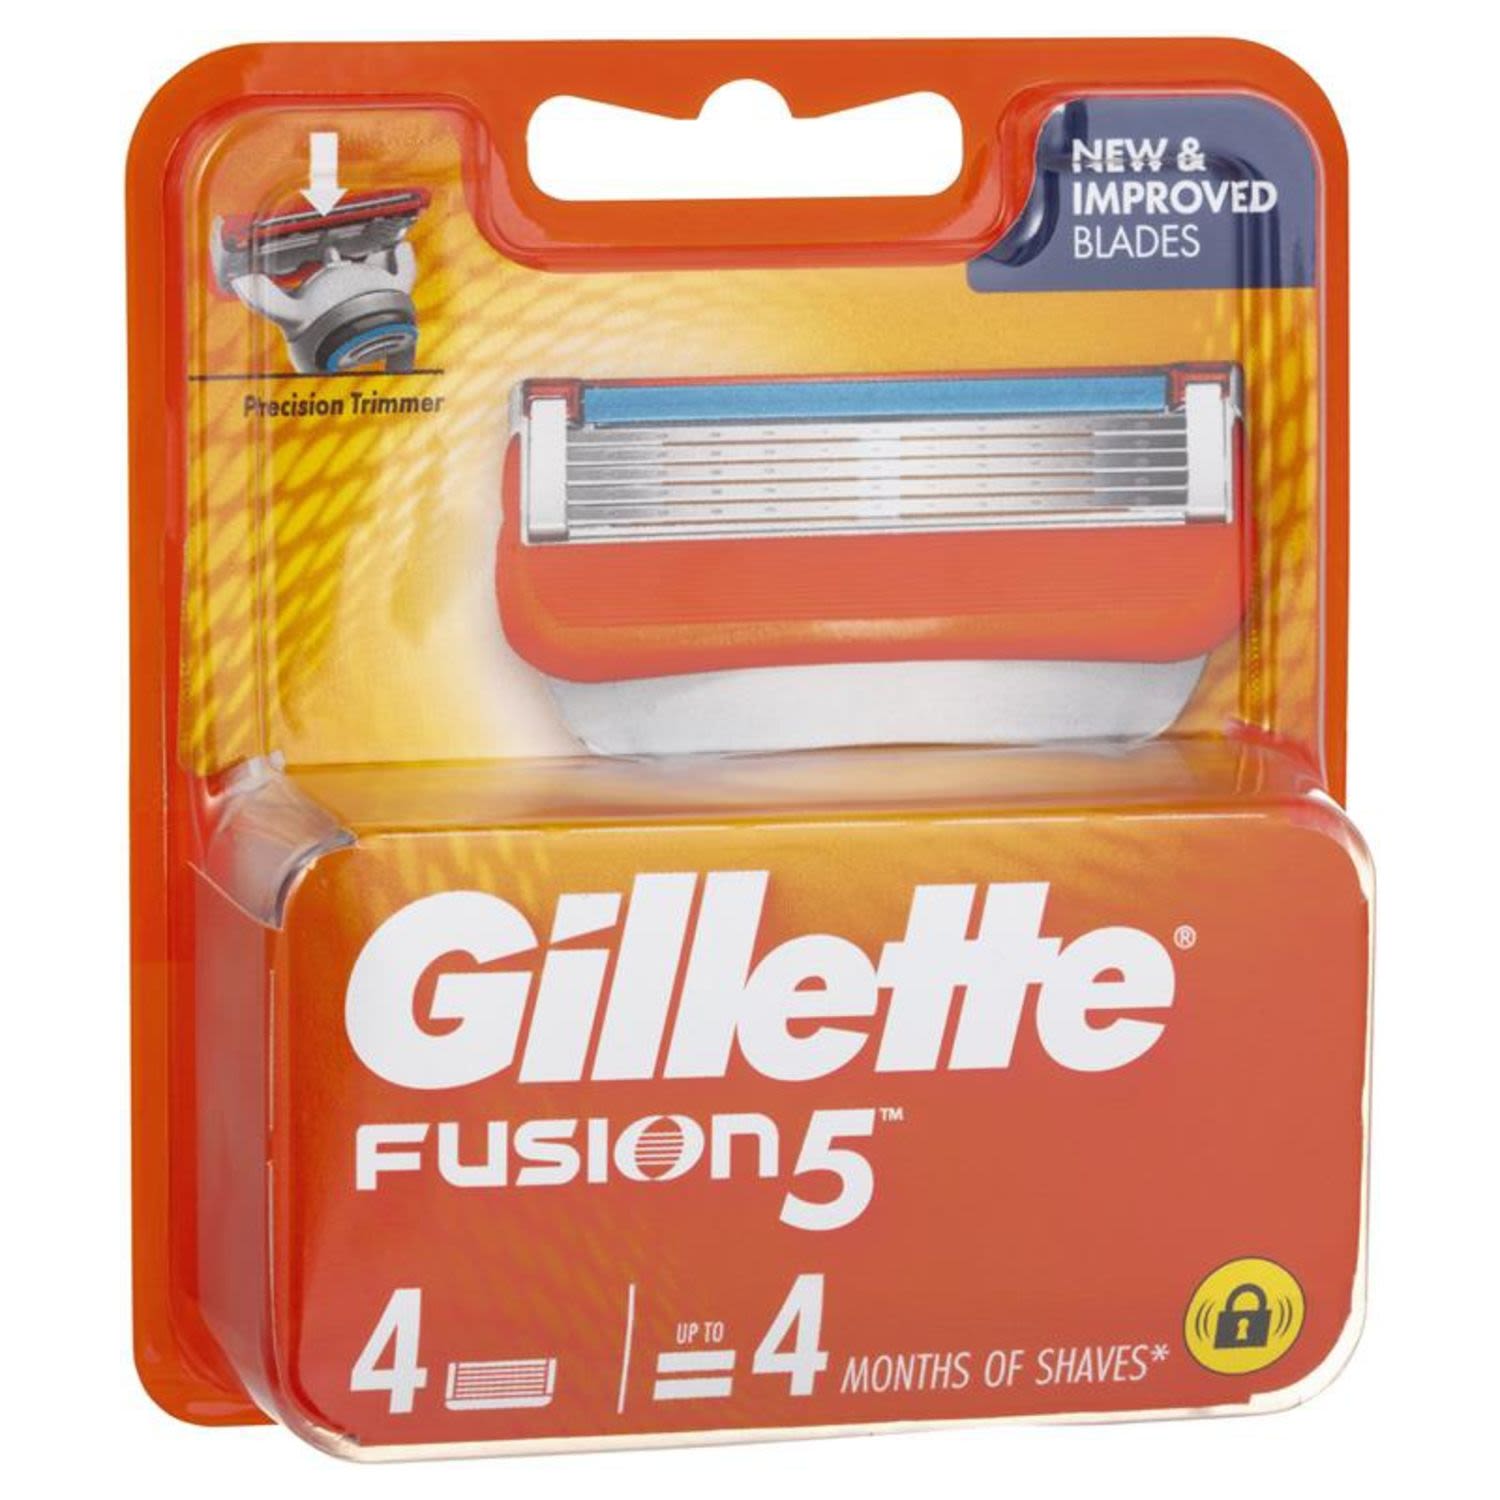 Gillette Fusion 5 Manual Cartridges, 4 Each